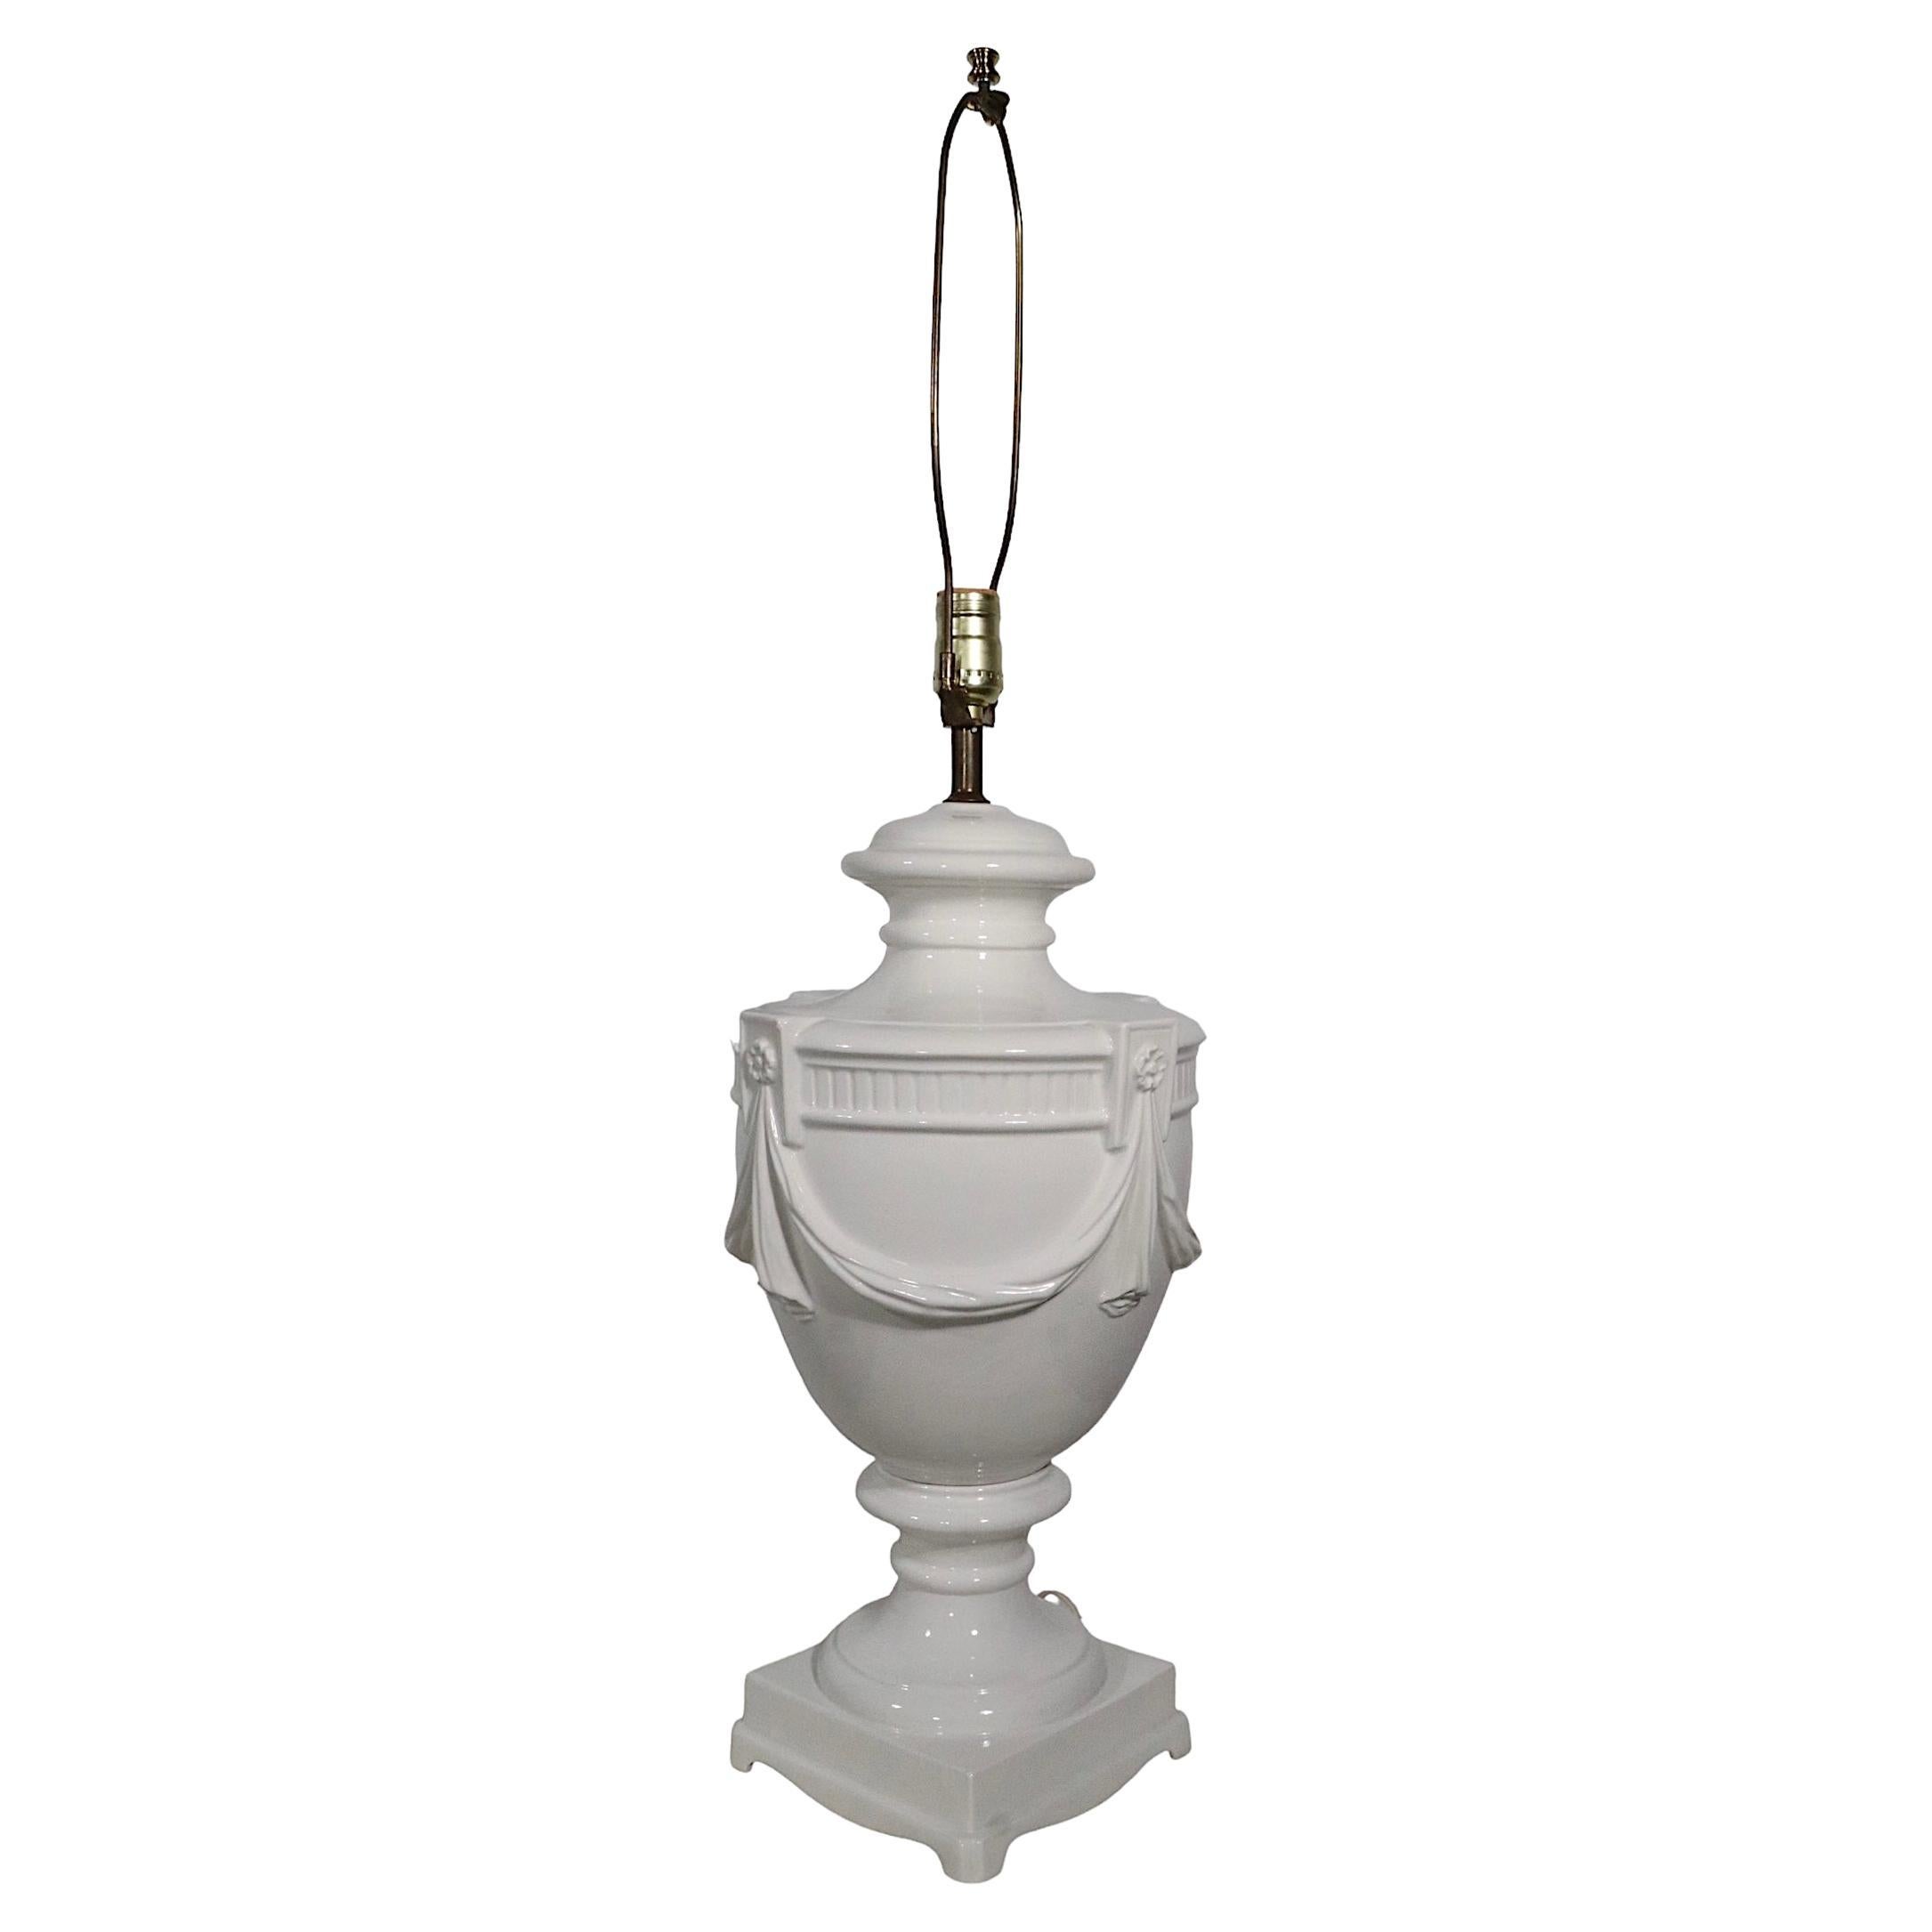 Lampe de table en forme d'urne en céramique blanche et blanche fabriquée en Italie vers 1950-1970